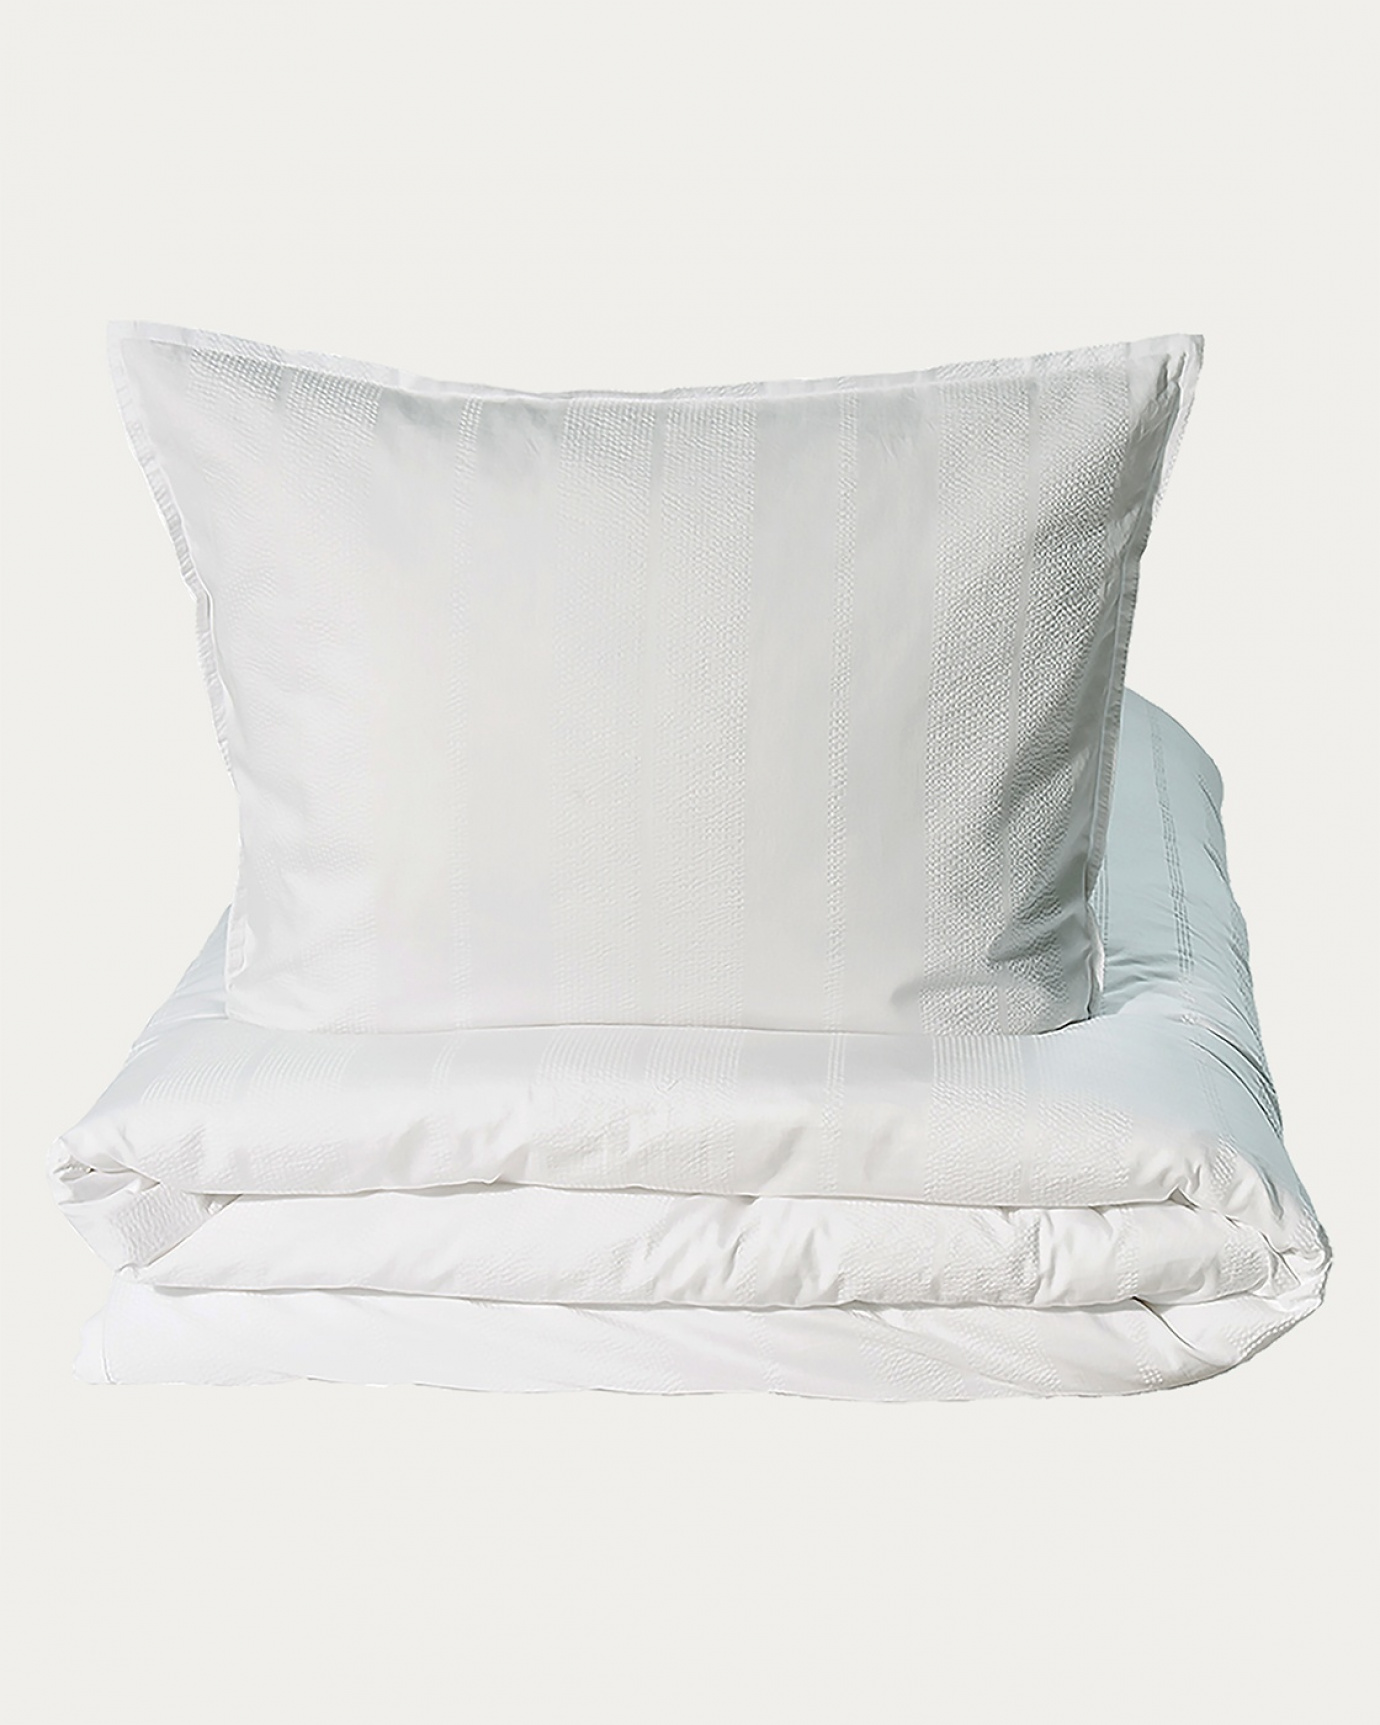 Produktbild strahlendes weiß YASMIN Bettwäscheset aus 100% Bio-Baumwollsatin von LINUM DESIGN. Größe Bettbezug 240x220 cm, zwei Kopfkissenbezüge 80x80 cm.